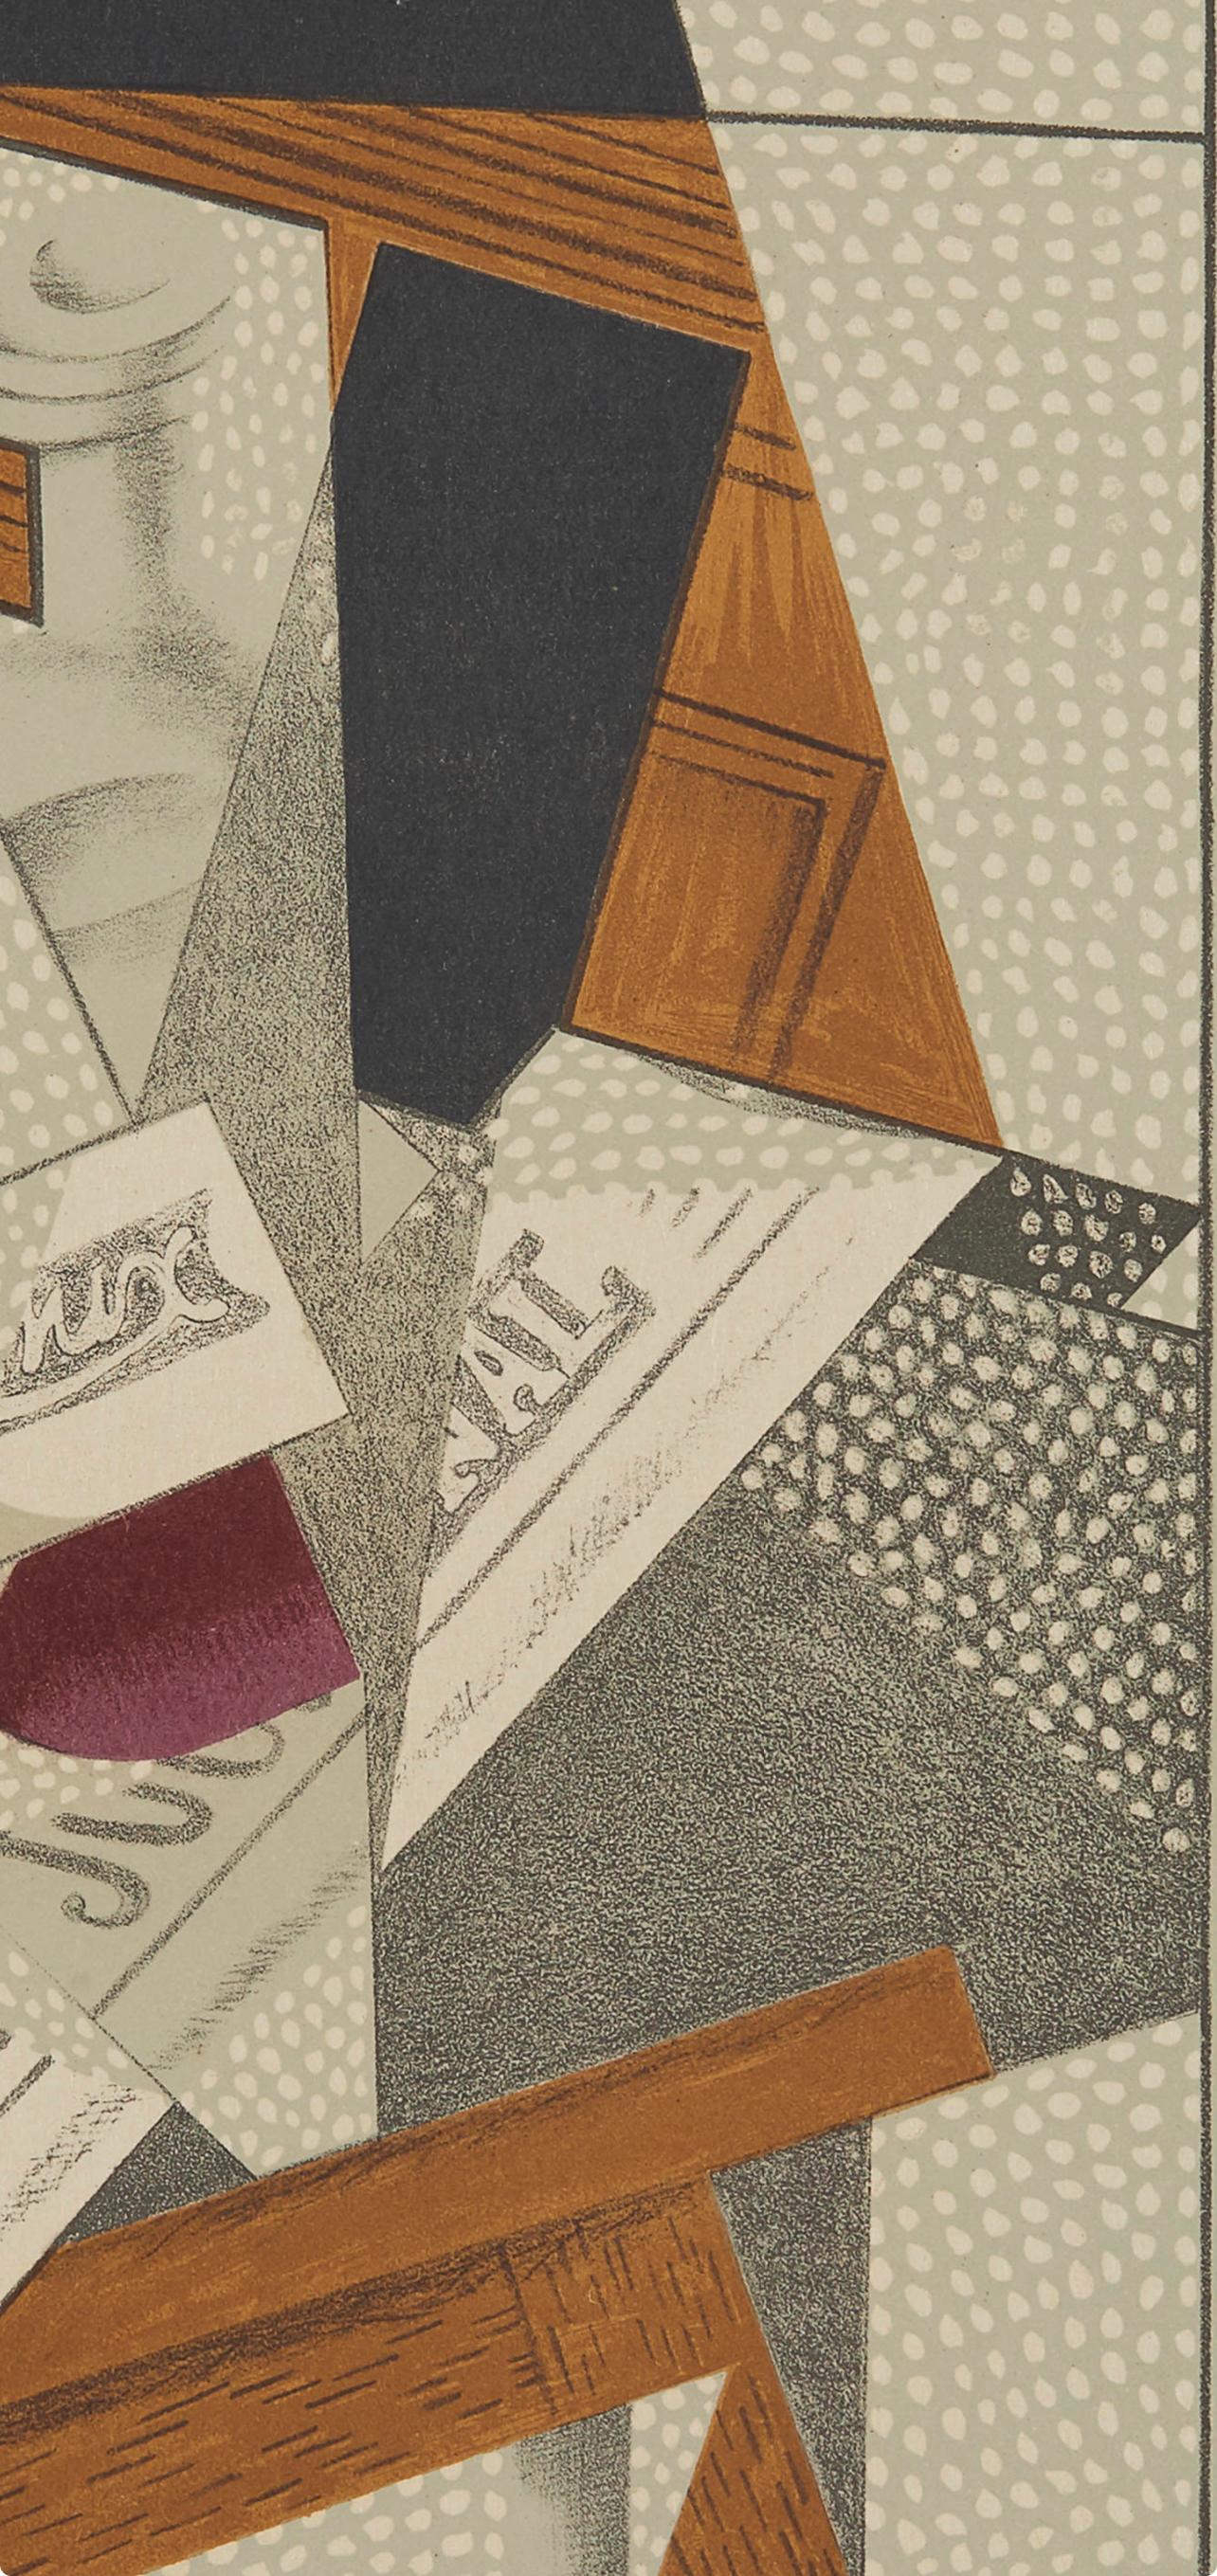 Gris, Bouteille (Kahnweiler 1969), Au Soleil du Plafond (après) - Print de Juan Gris